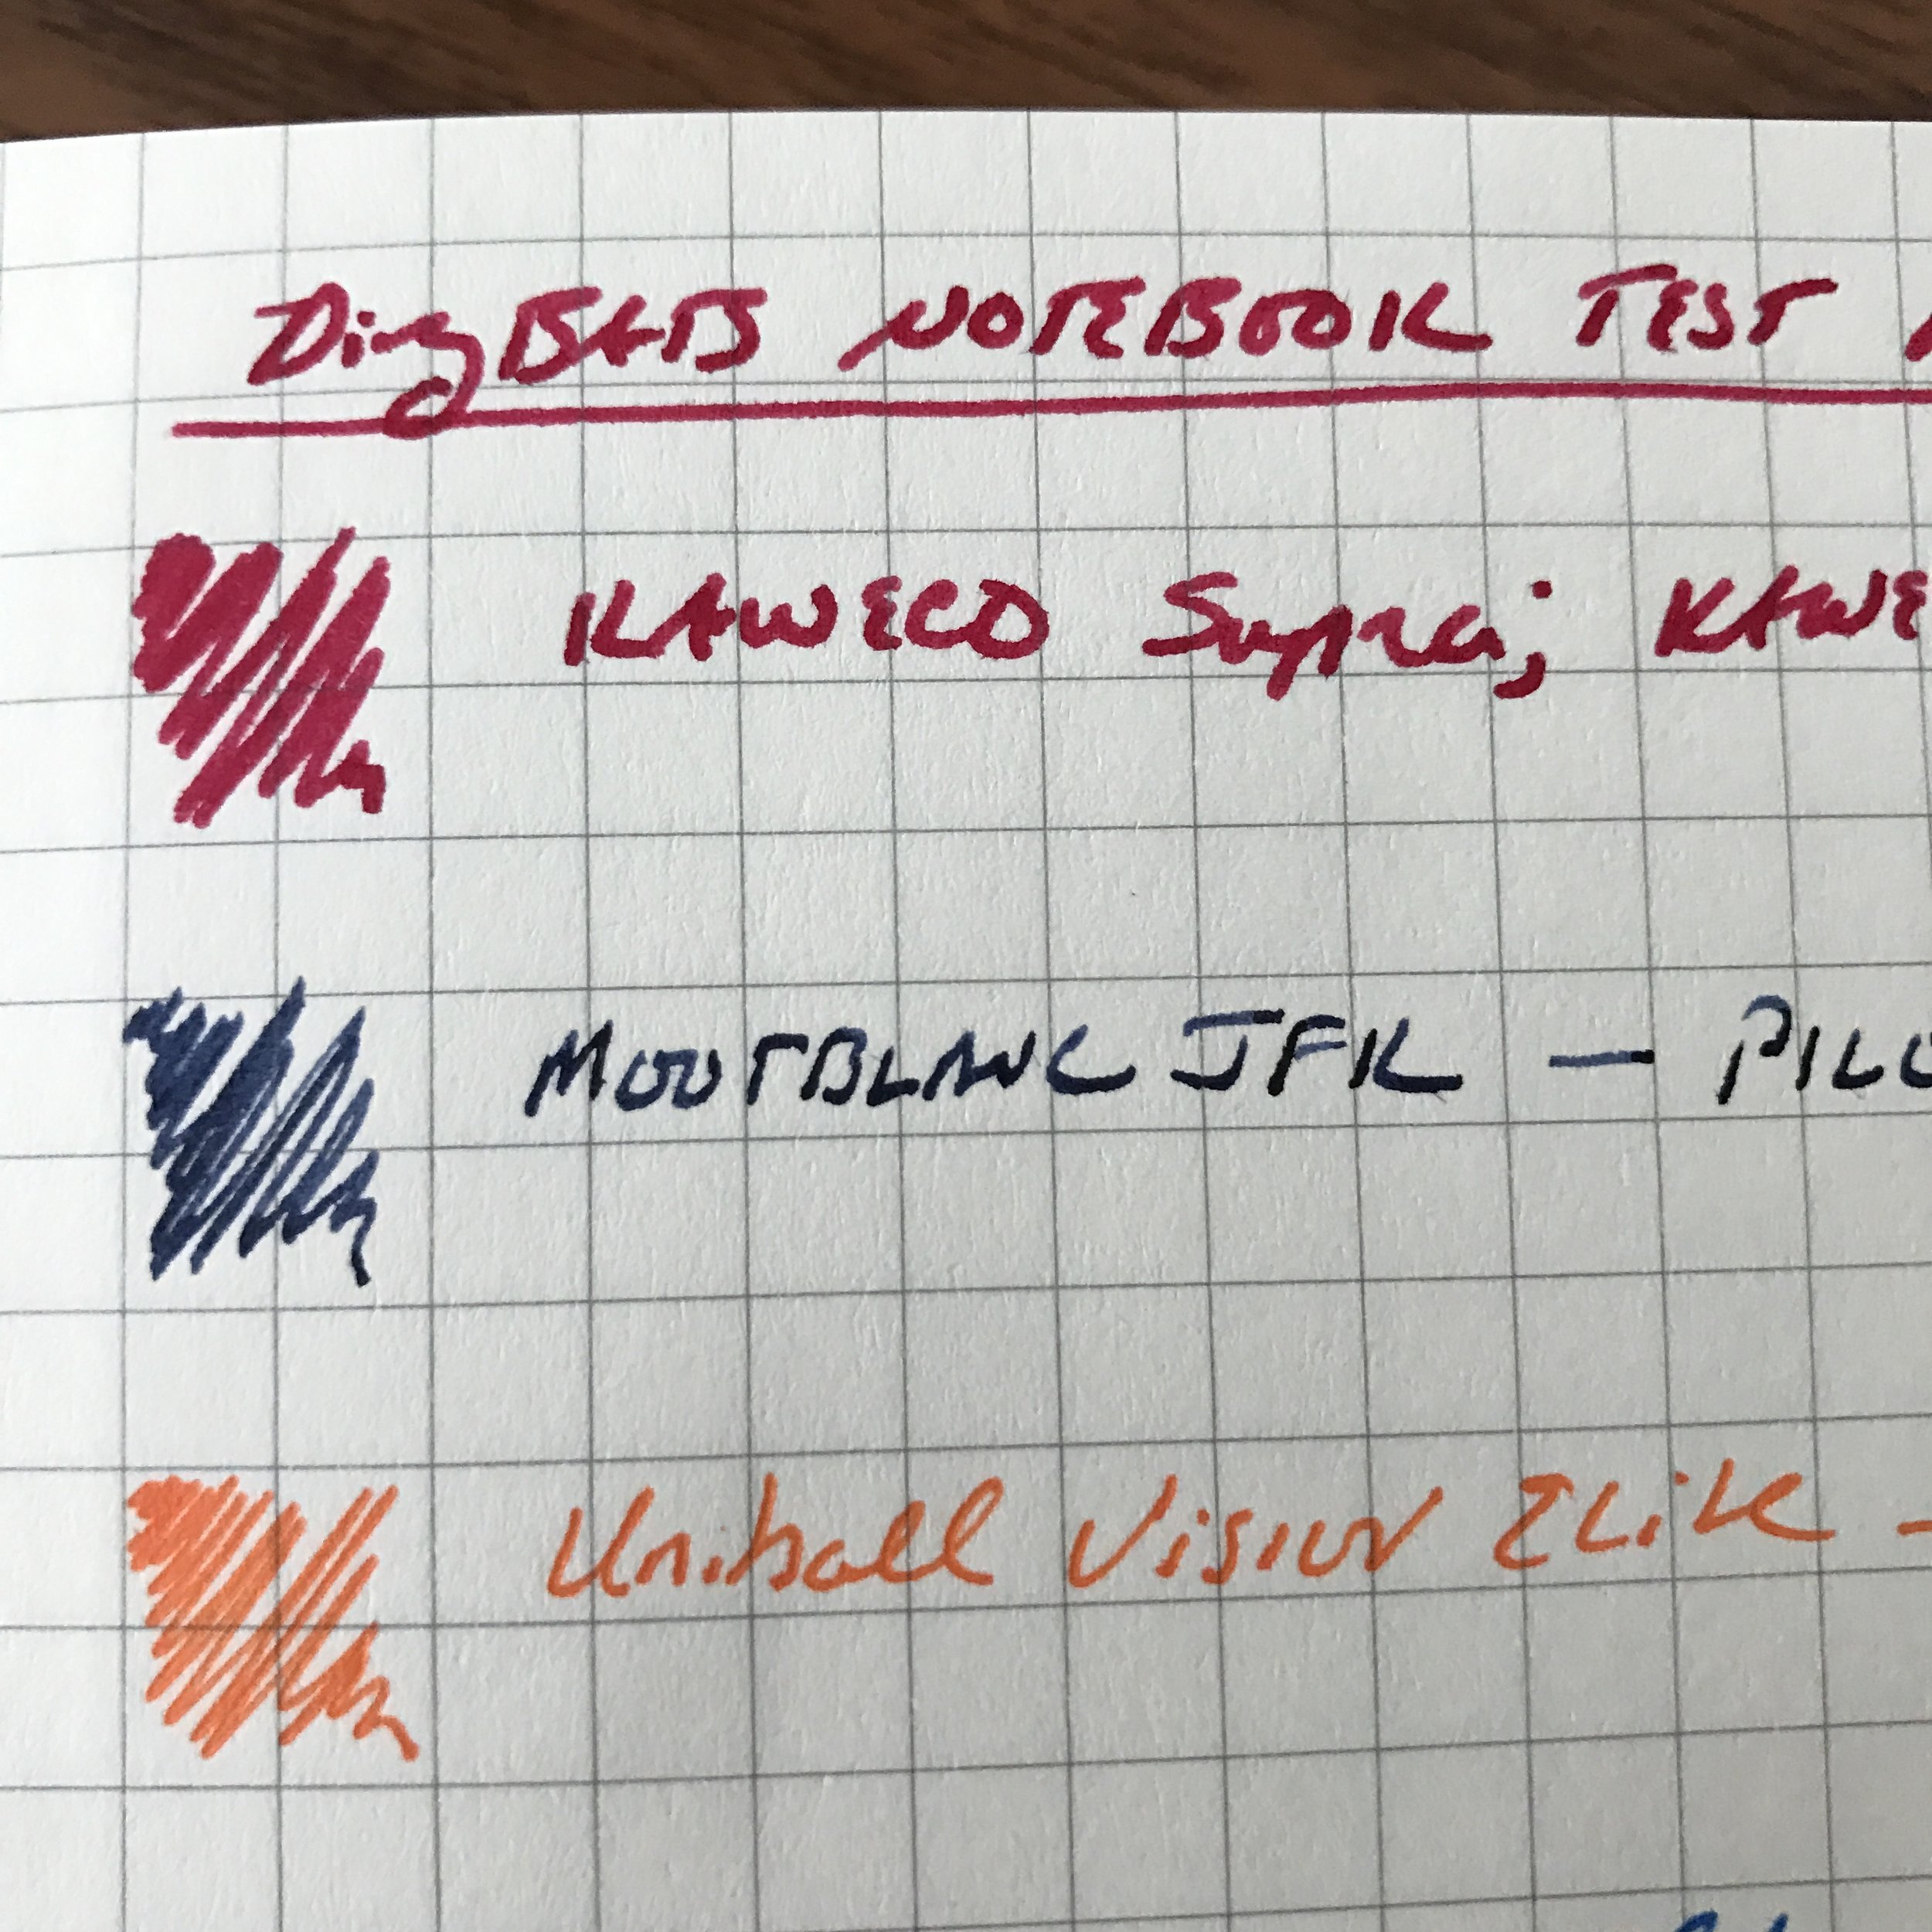 Dingbats* Writing Sample